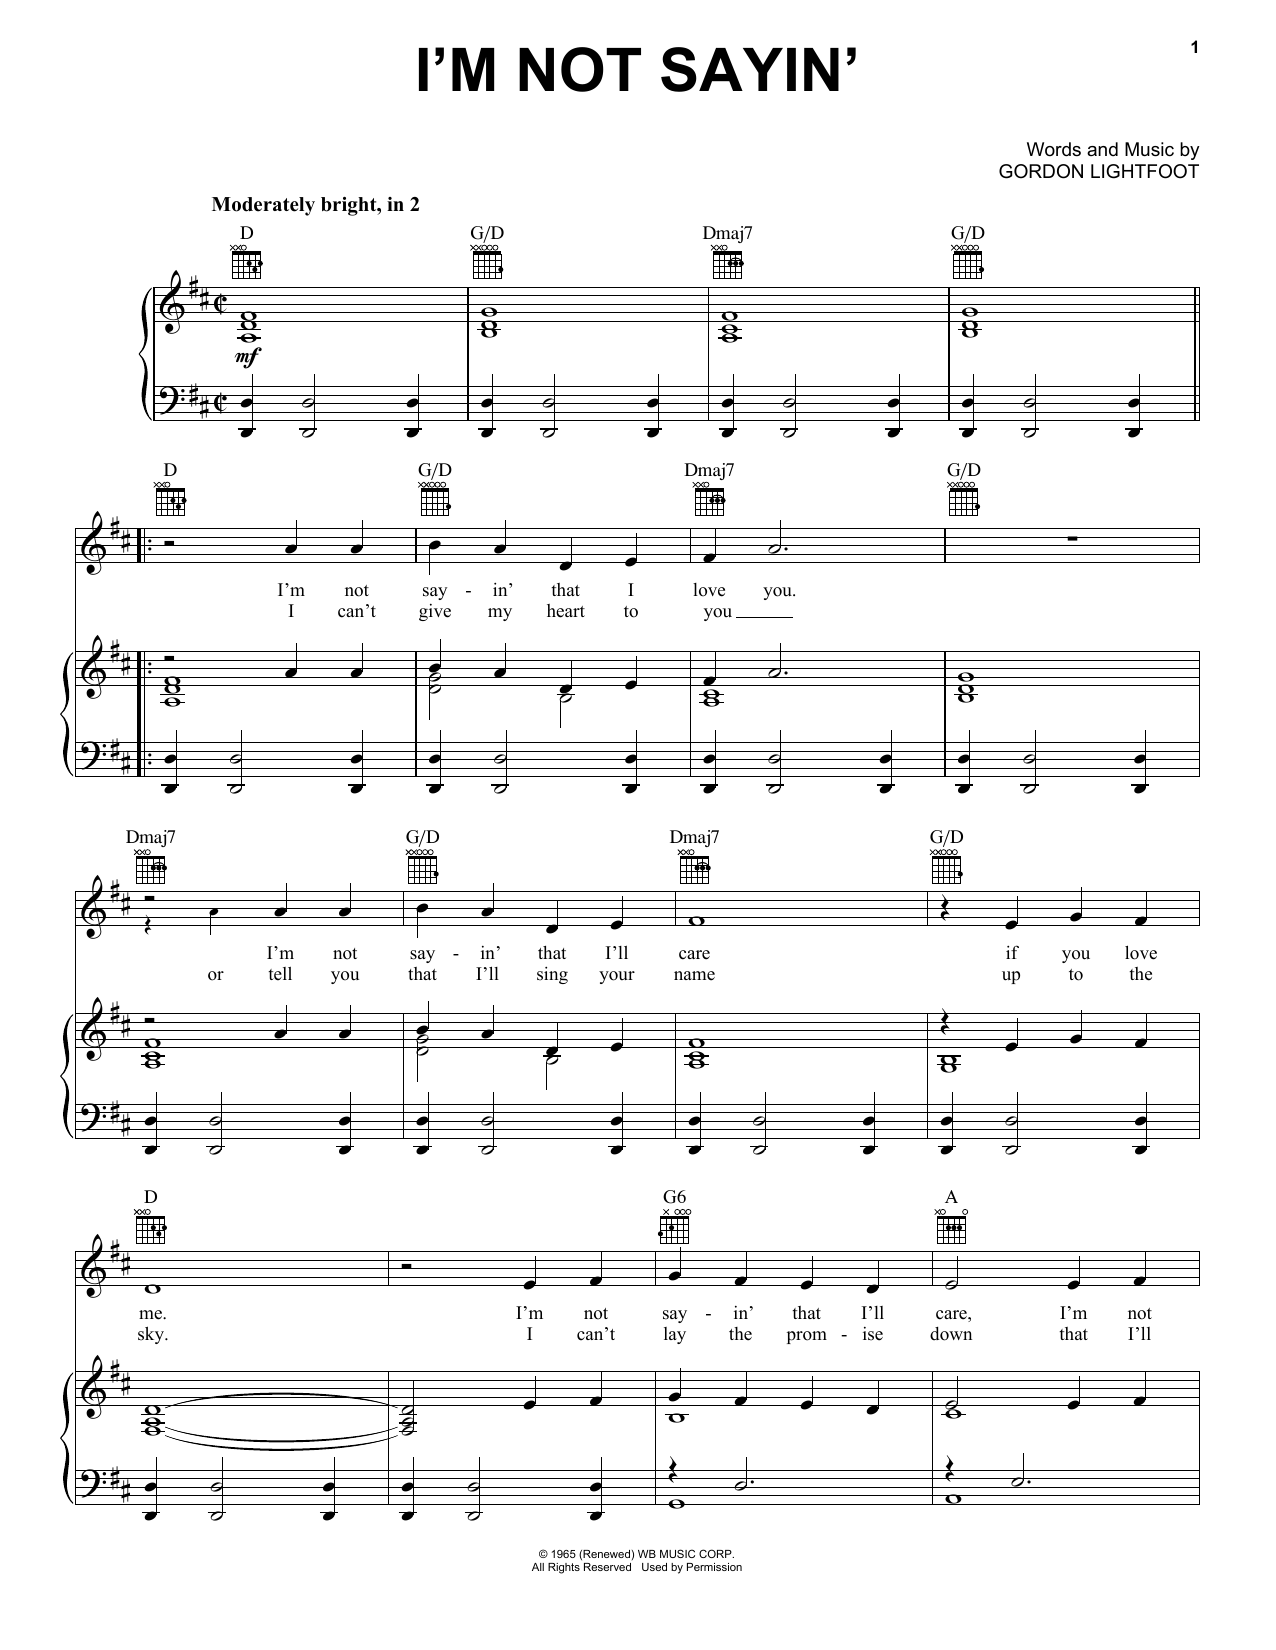 Gordon Lightfoot I'm Not Sayin' Sheet Music Notes & Chords for Lyrics & Chords - Download or Print PDF